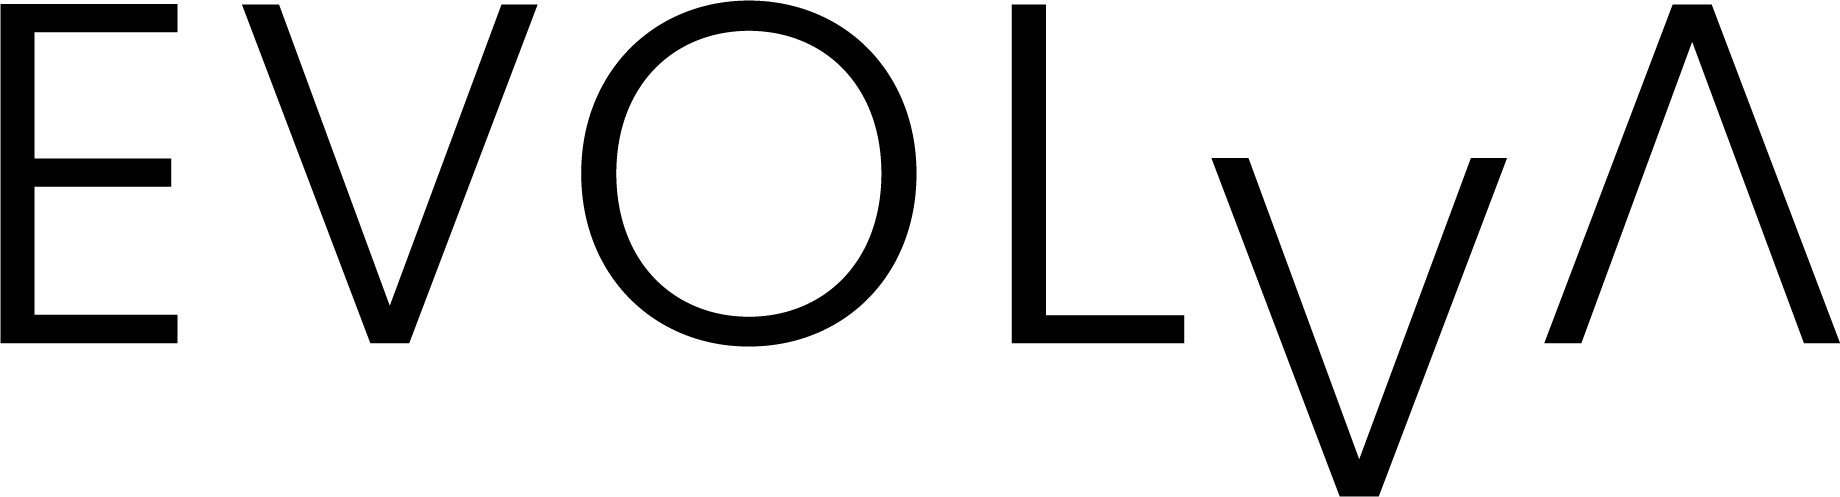 evolva logo